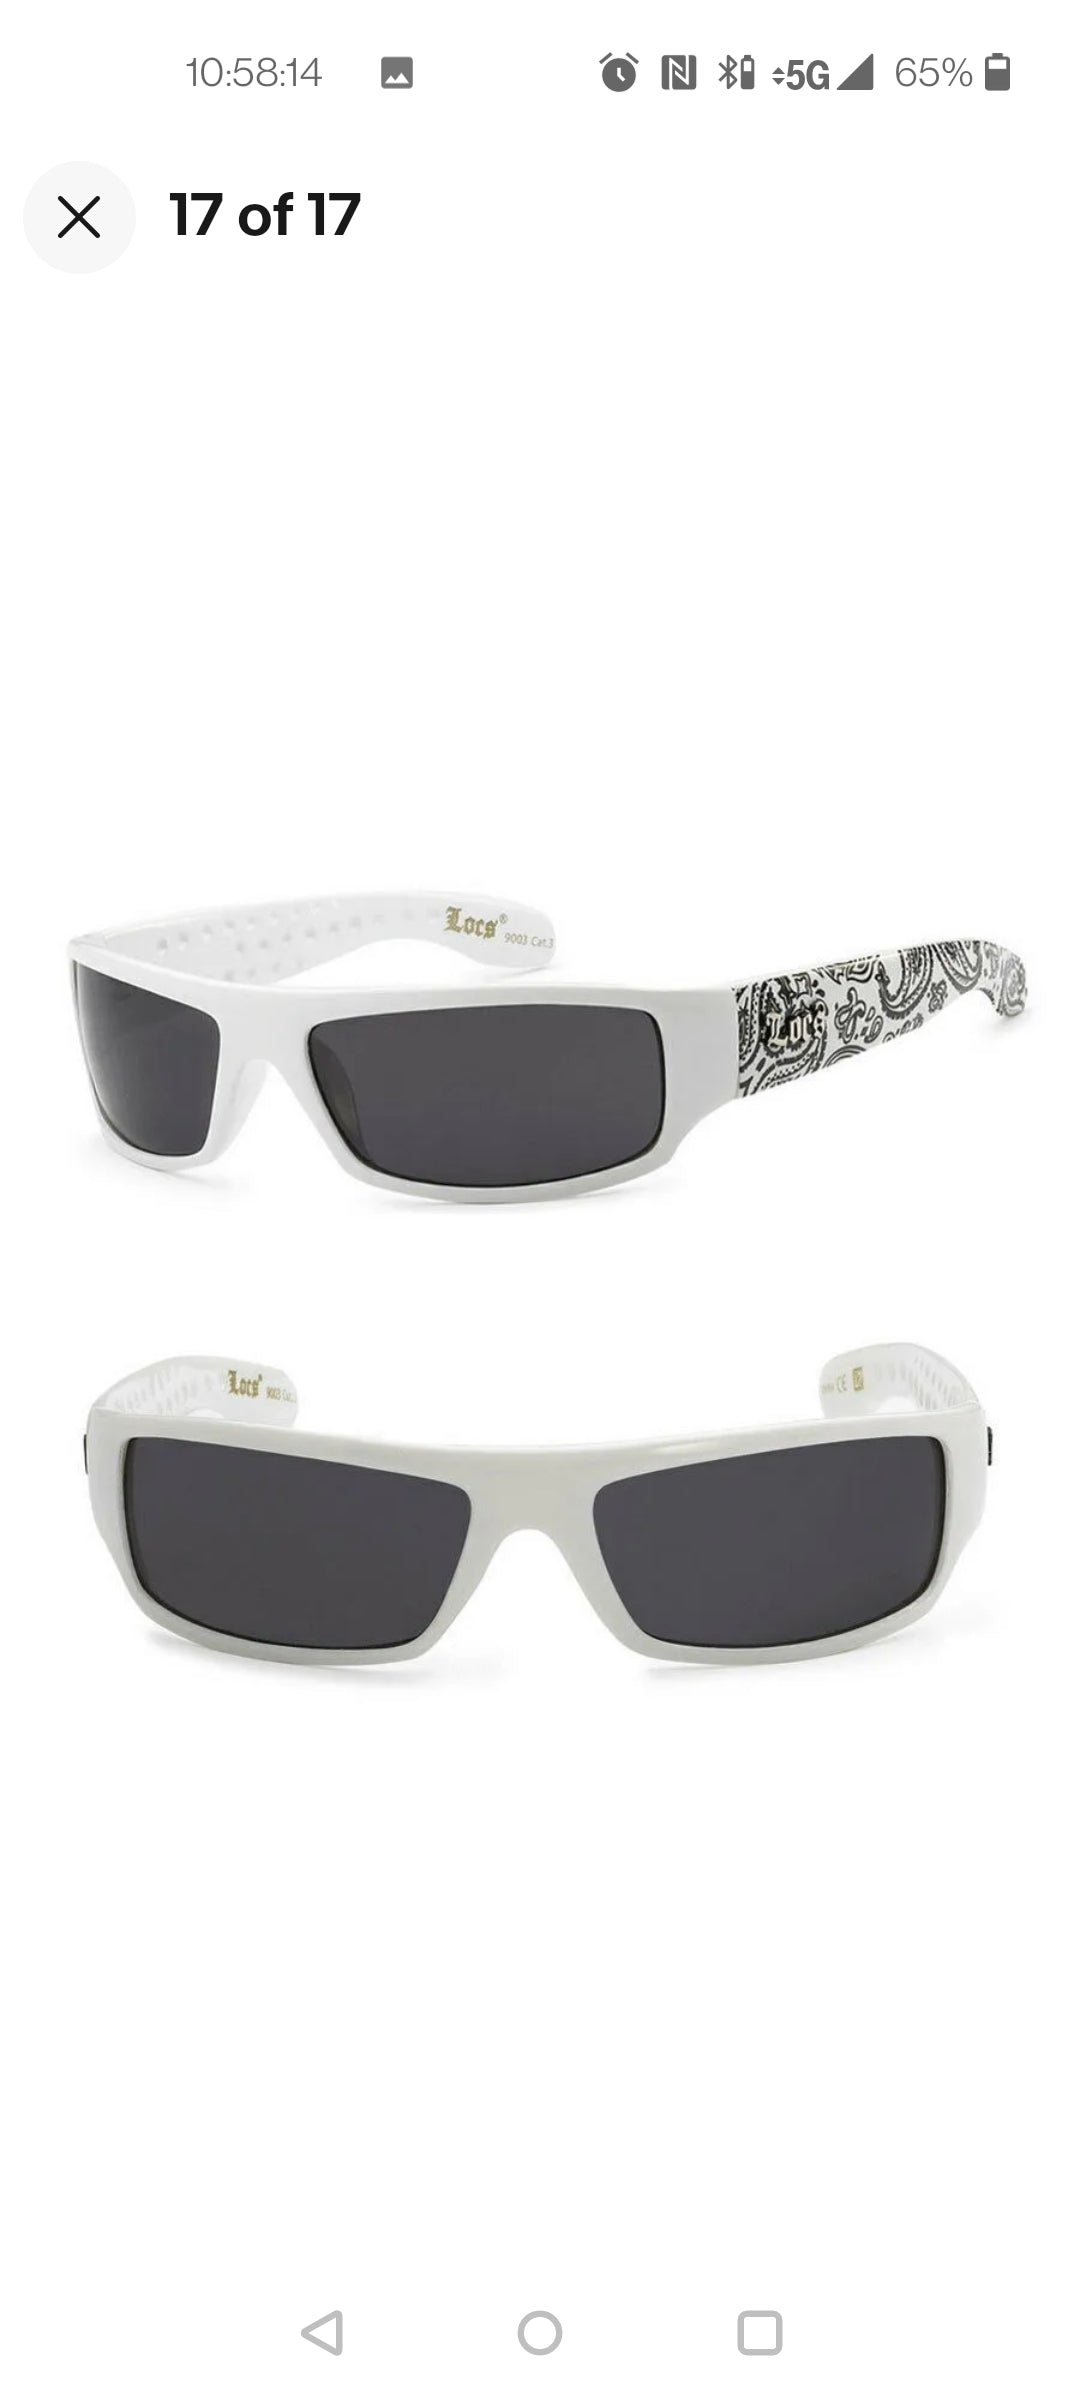 LOCS Hardcore Gangster Bandana Shades Flat Top OG Sunglasses